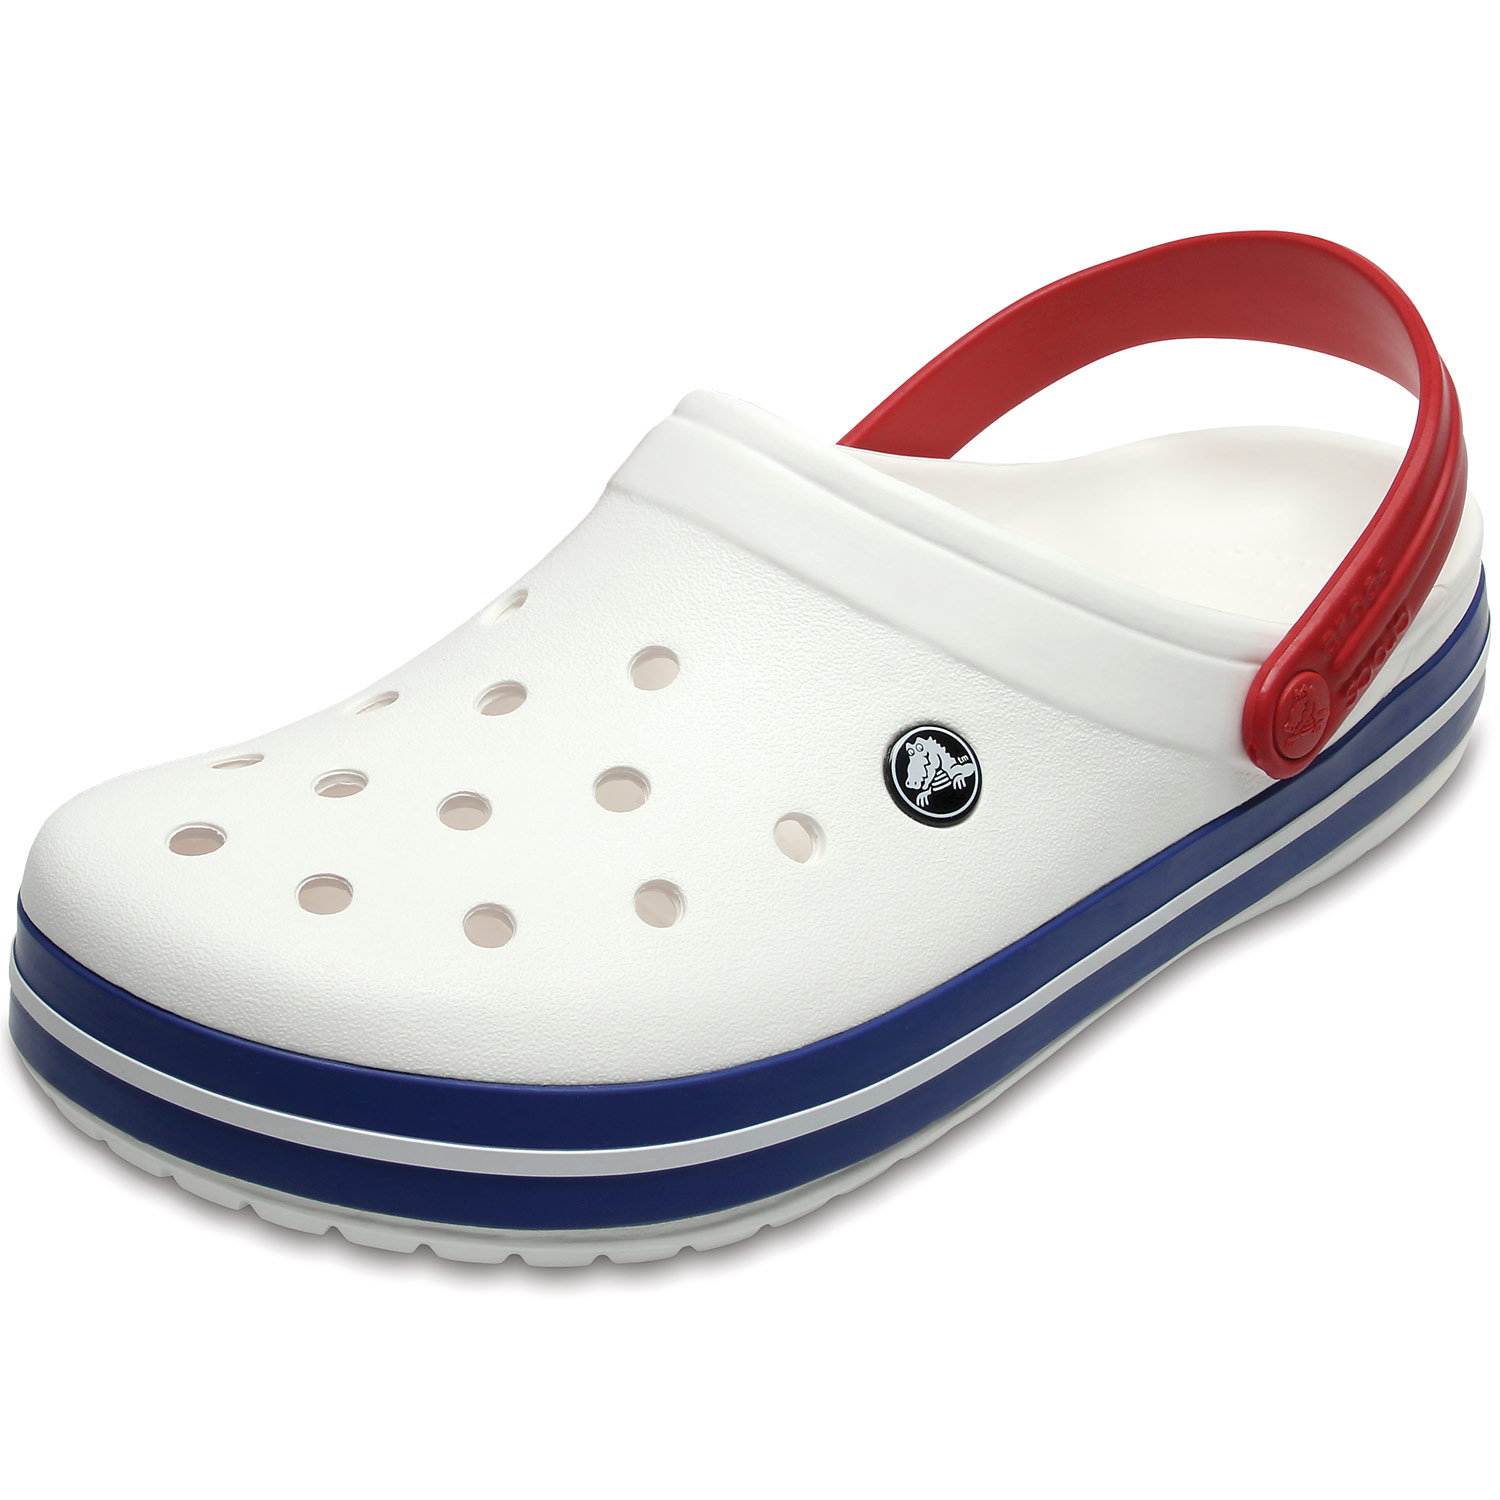 blue crocs shoes